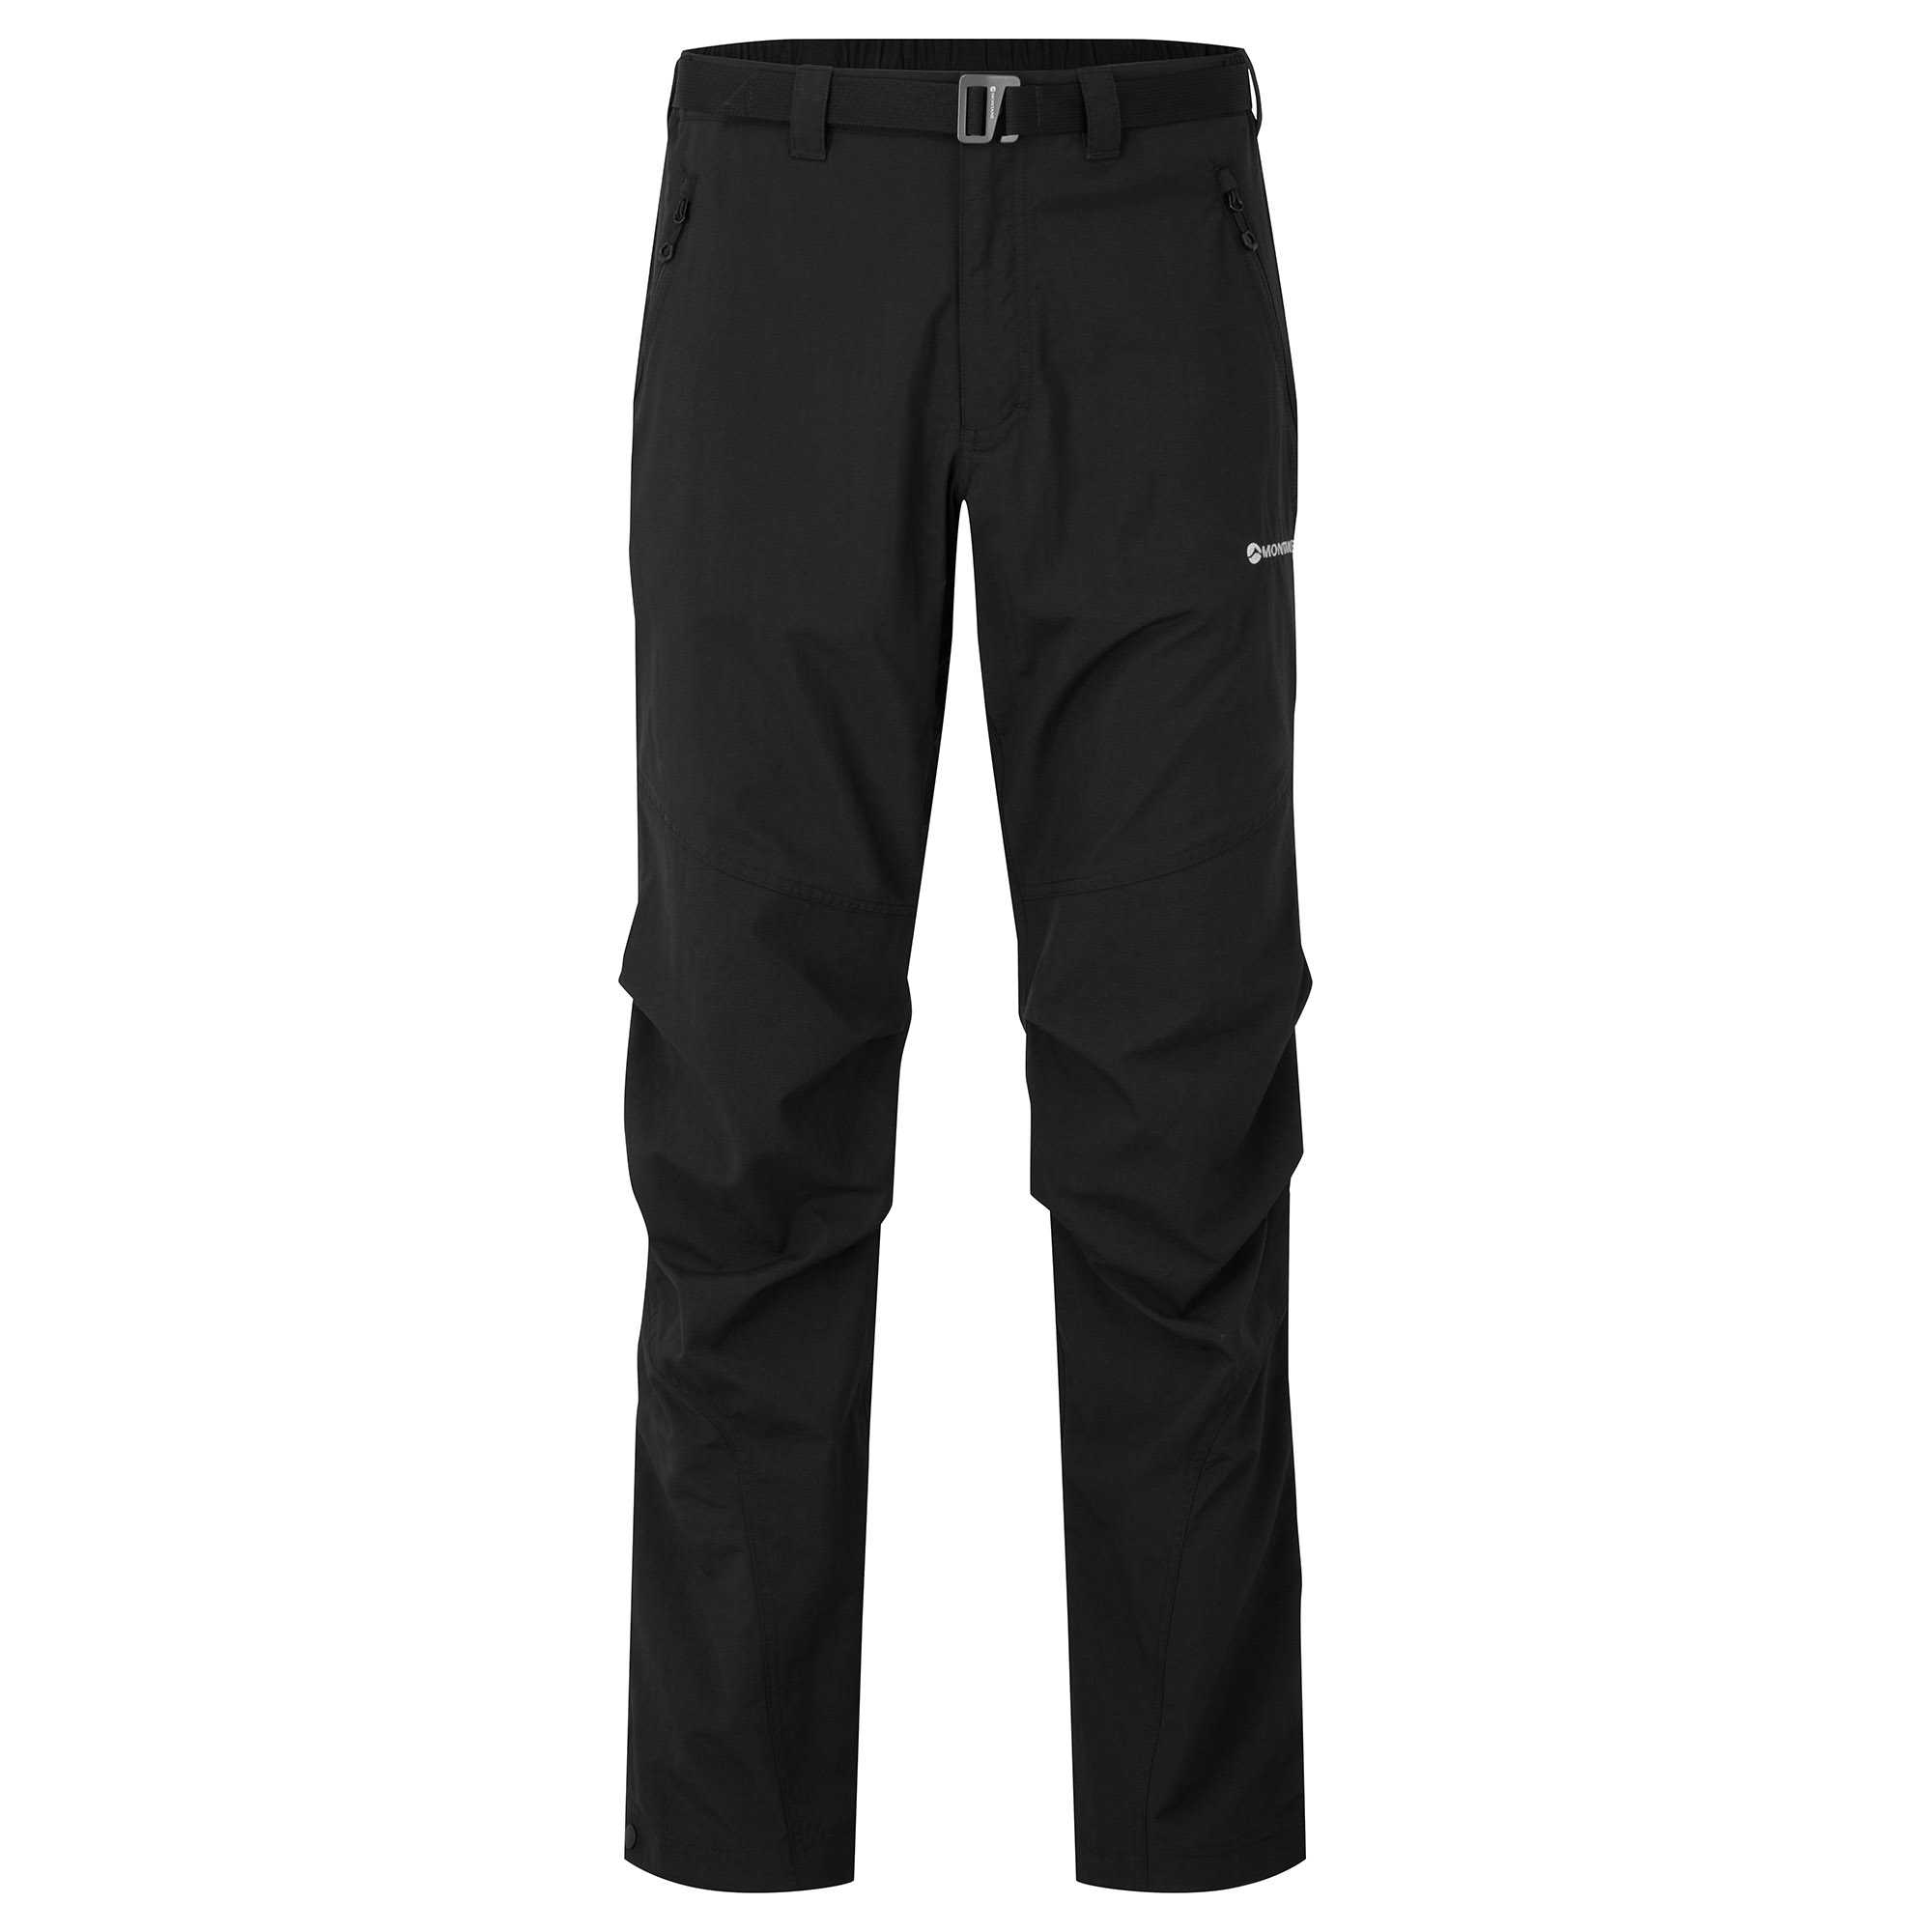 Montane pánské softshellové kalhoty Terra Pants - Prodloužené Nohavice Barva: black, Velikost: 32